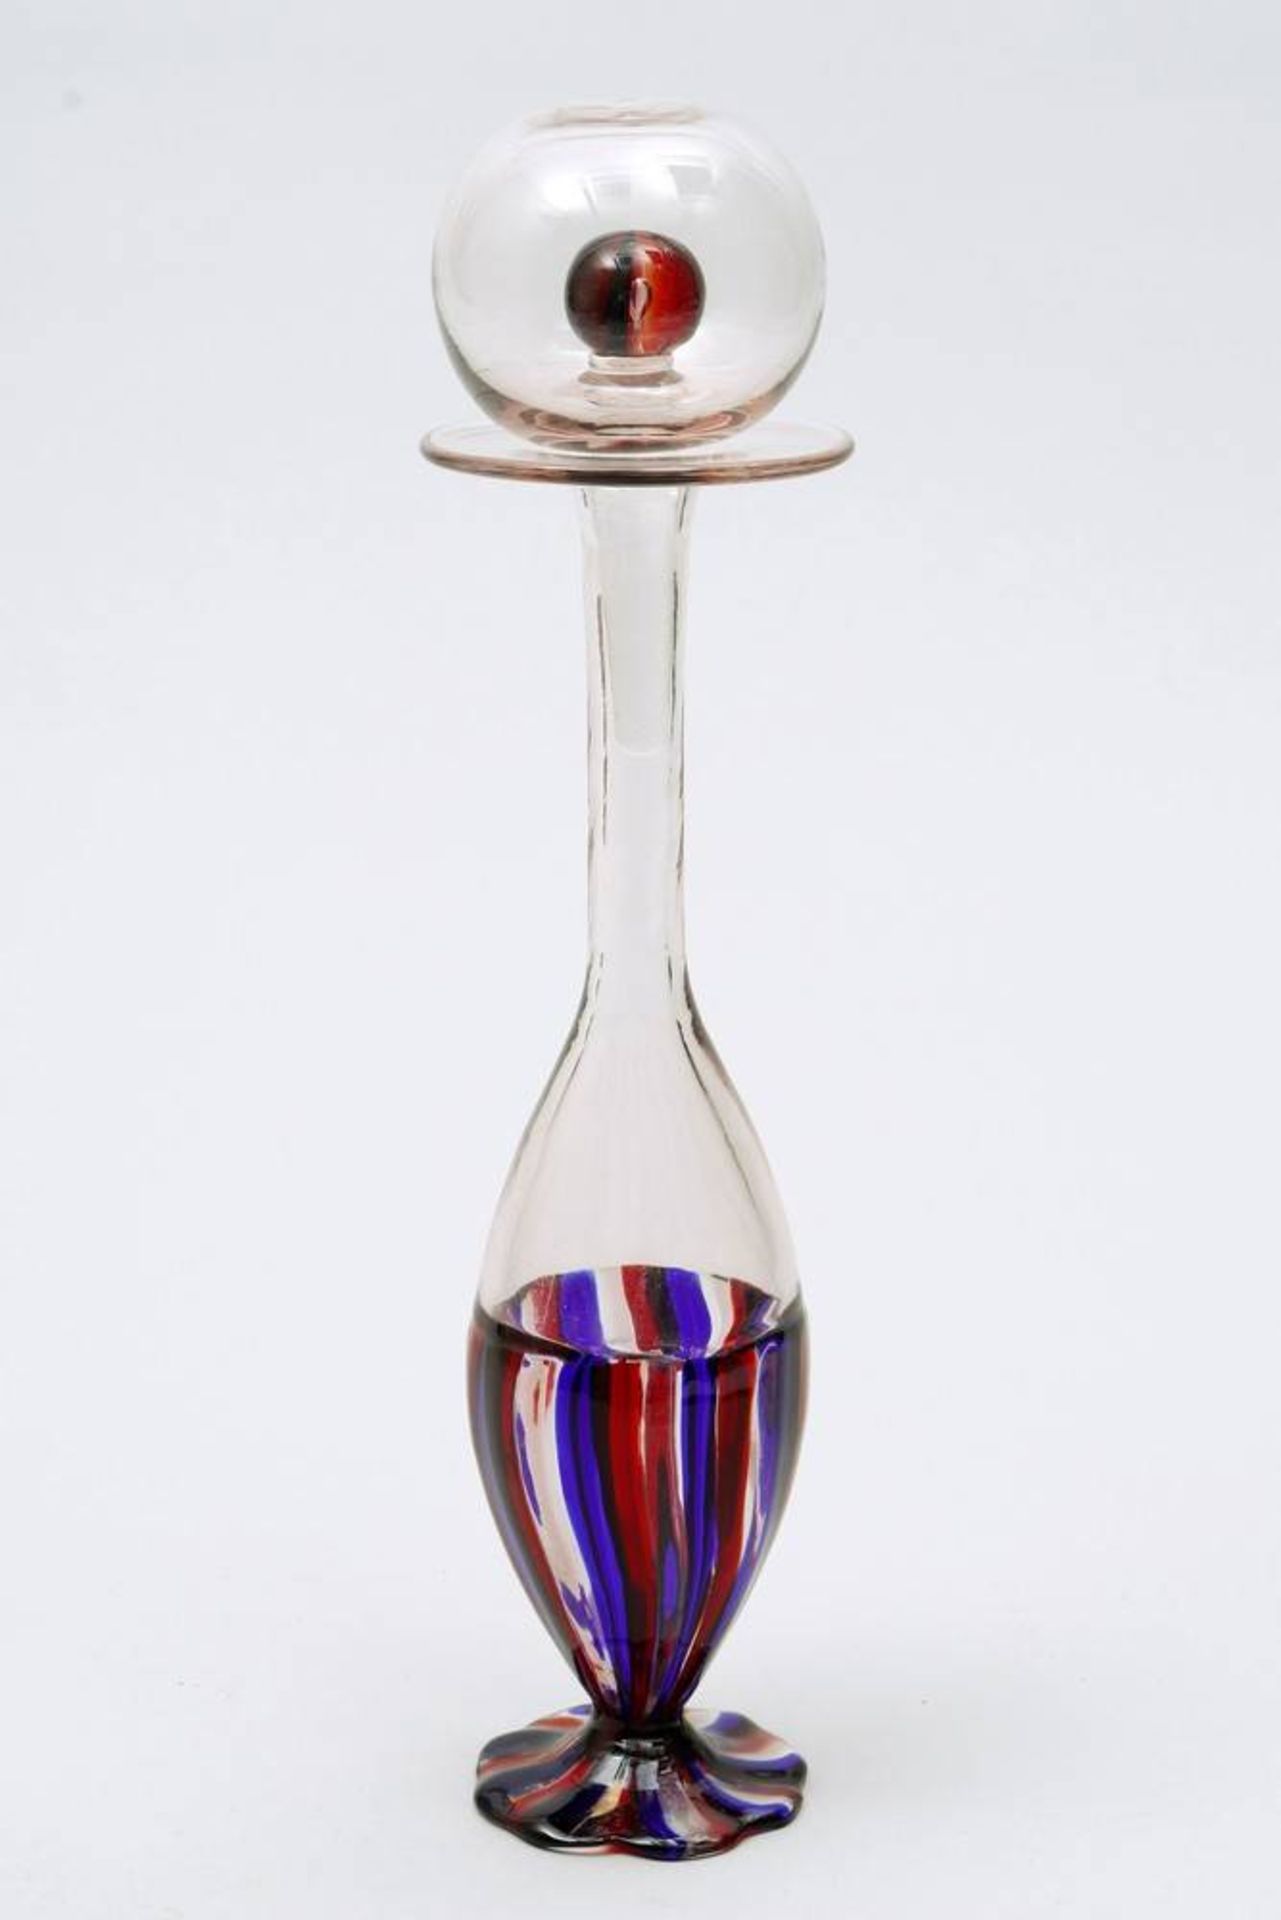 Zierkaraffe Salviati & Co., Italien, um 1960/70, Glas, auf passigem Fuß, keulenförmiger Korpus mit